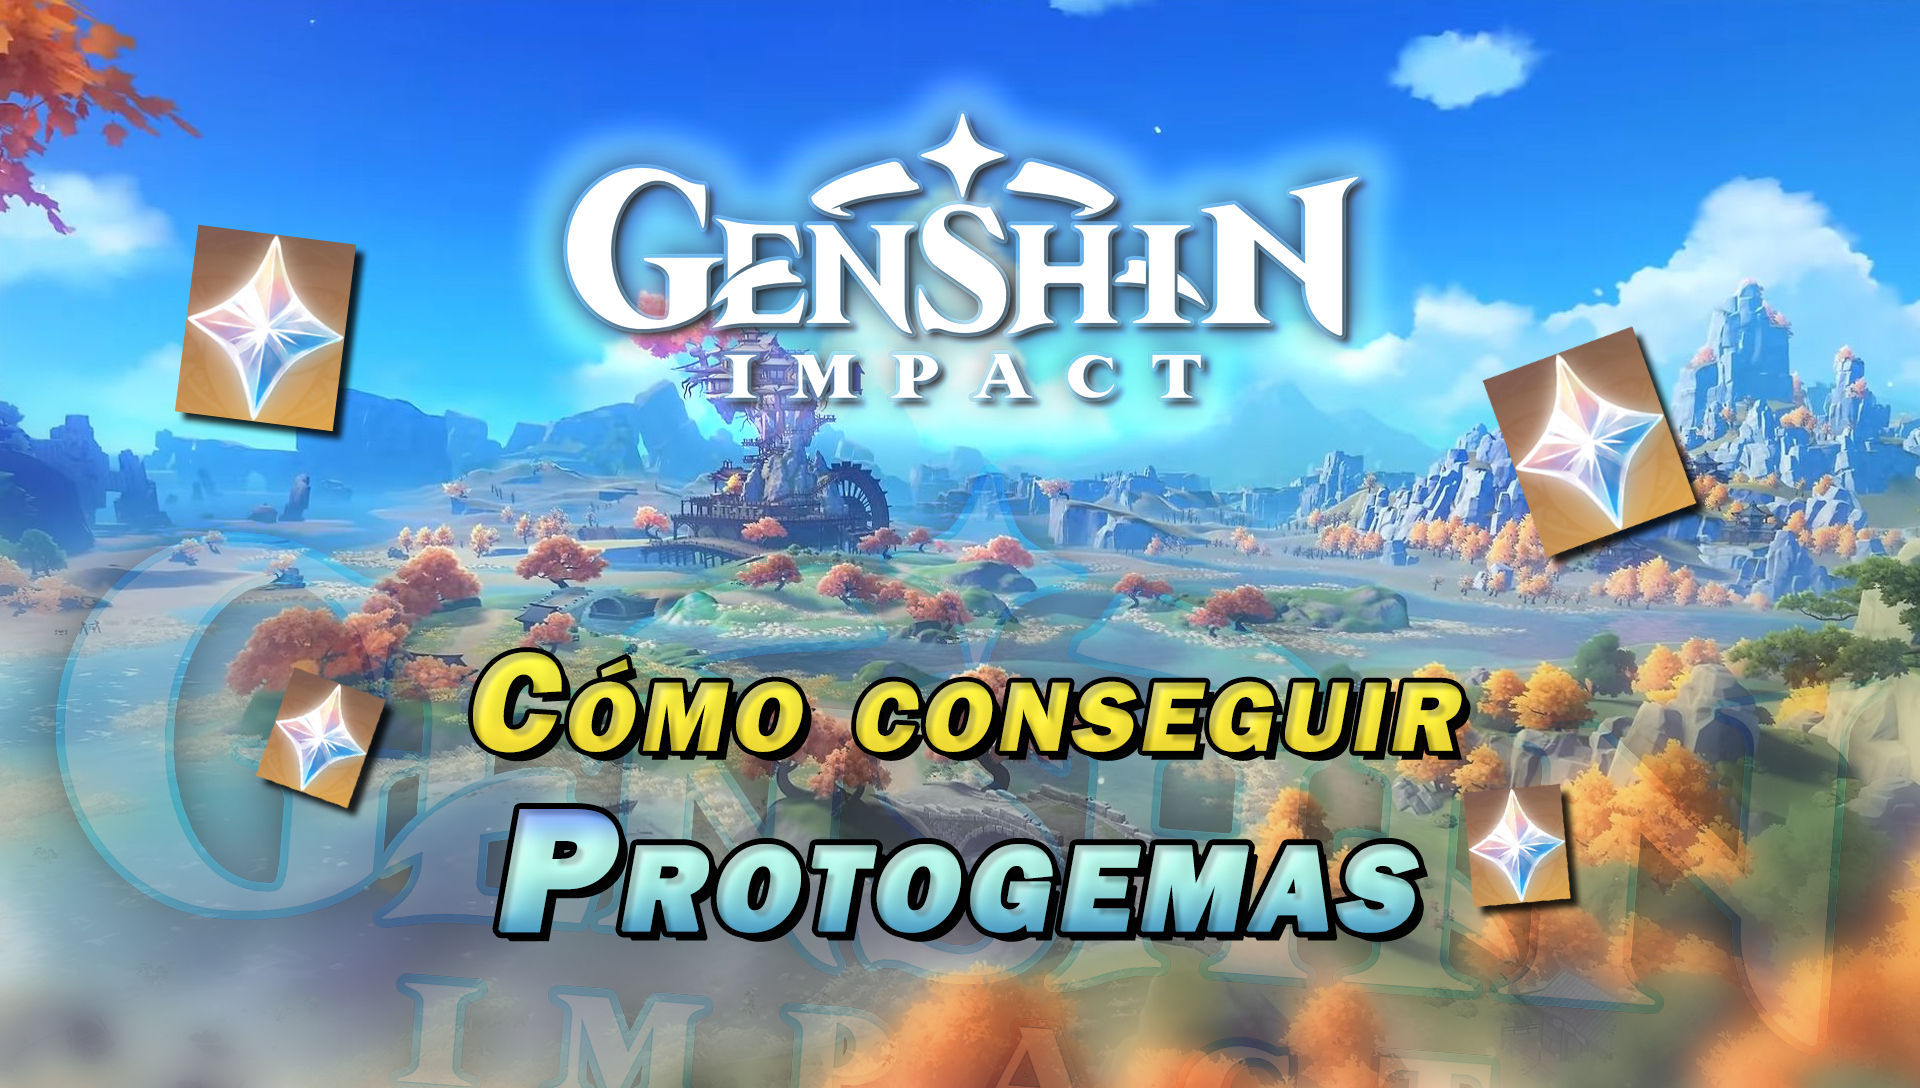 Genshin Impact lanza dos nuevos códigos con Protogemas gratis para